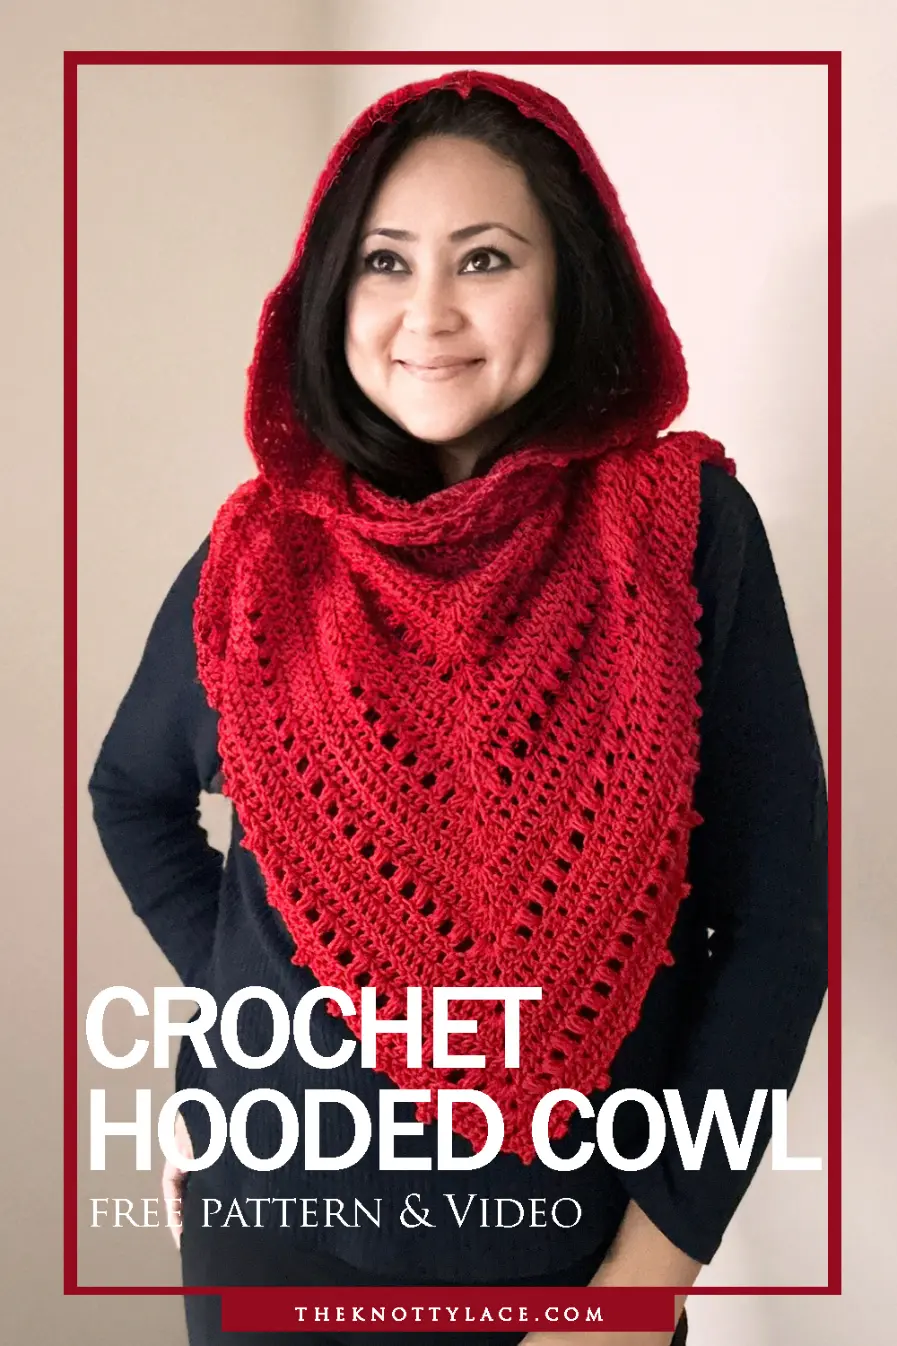 Crochet Hooded cowl free pattern & Vide tutorial